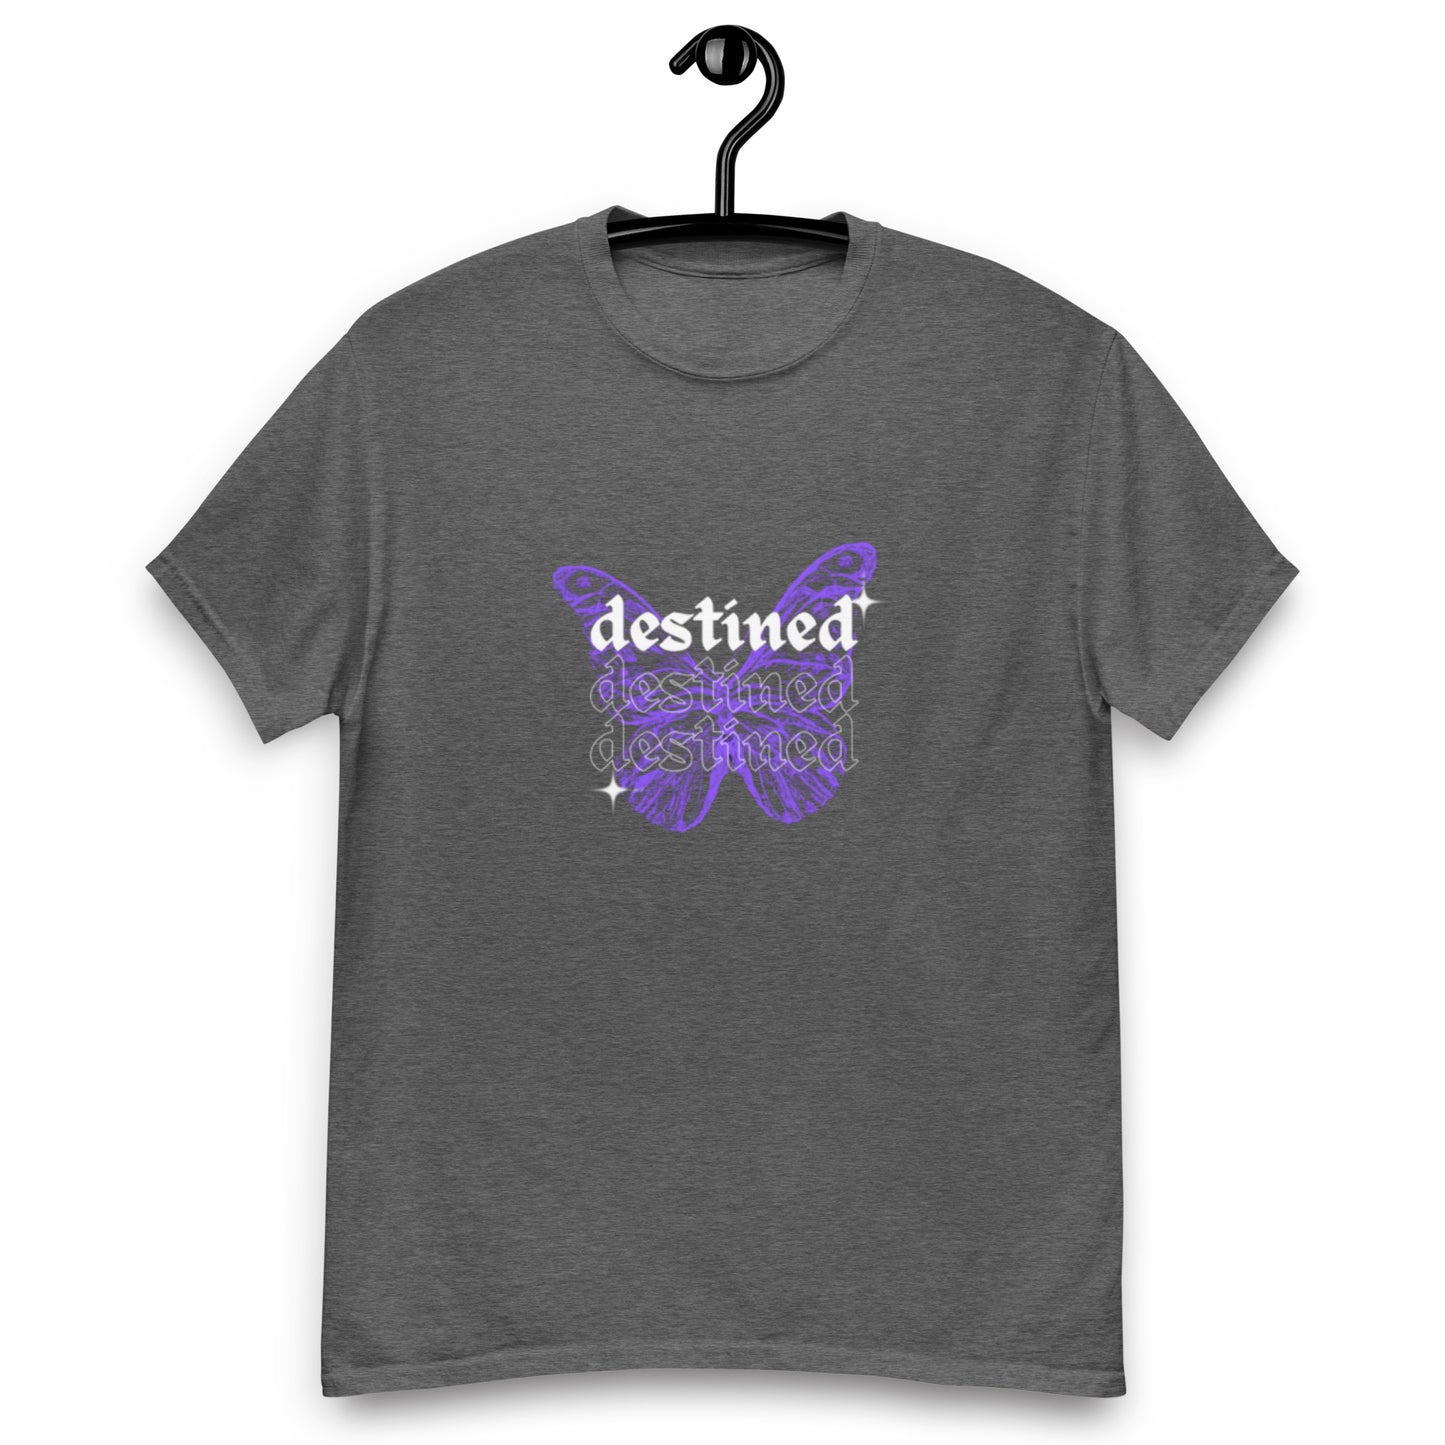 "destined" t shirt